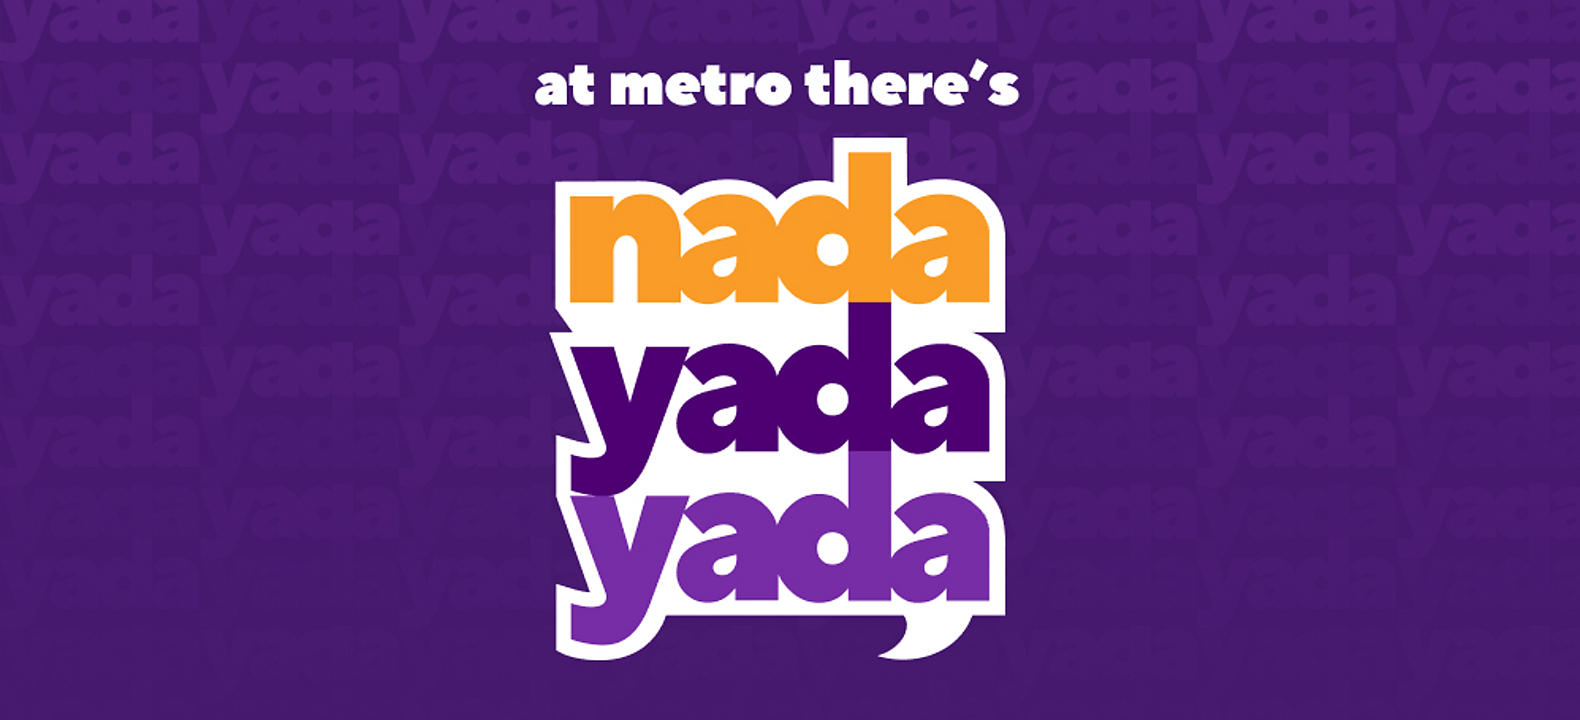 At Metro there's nada yada yada